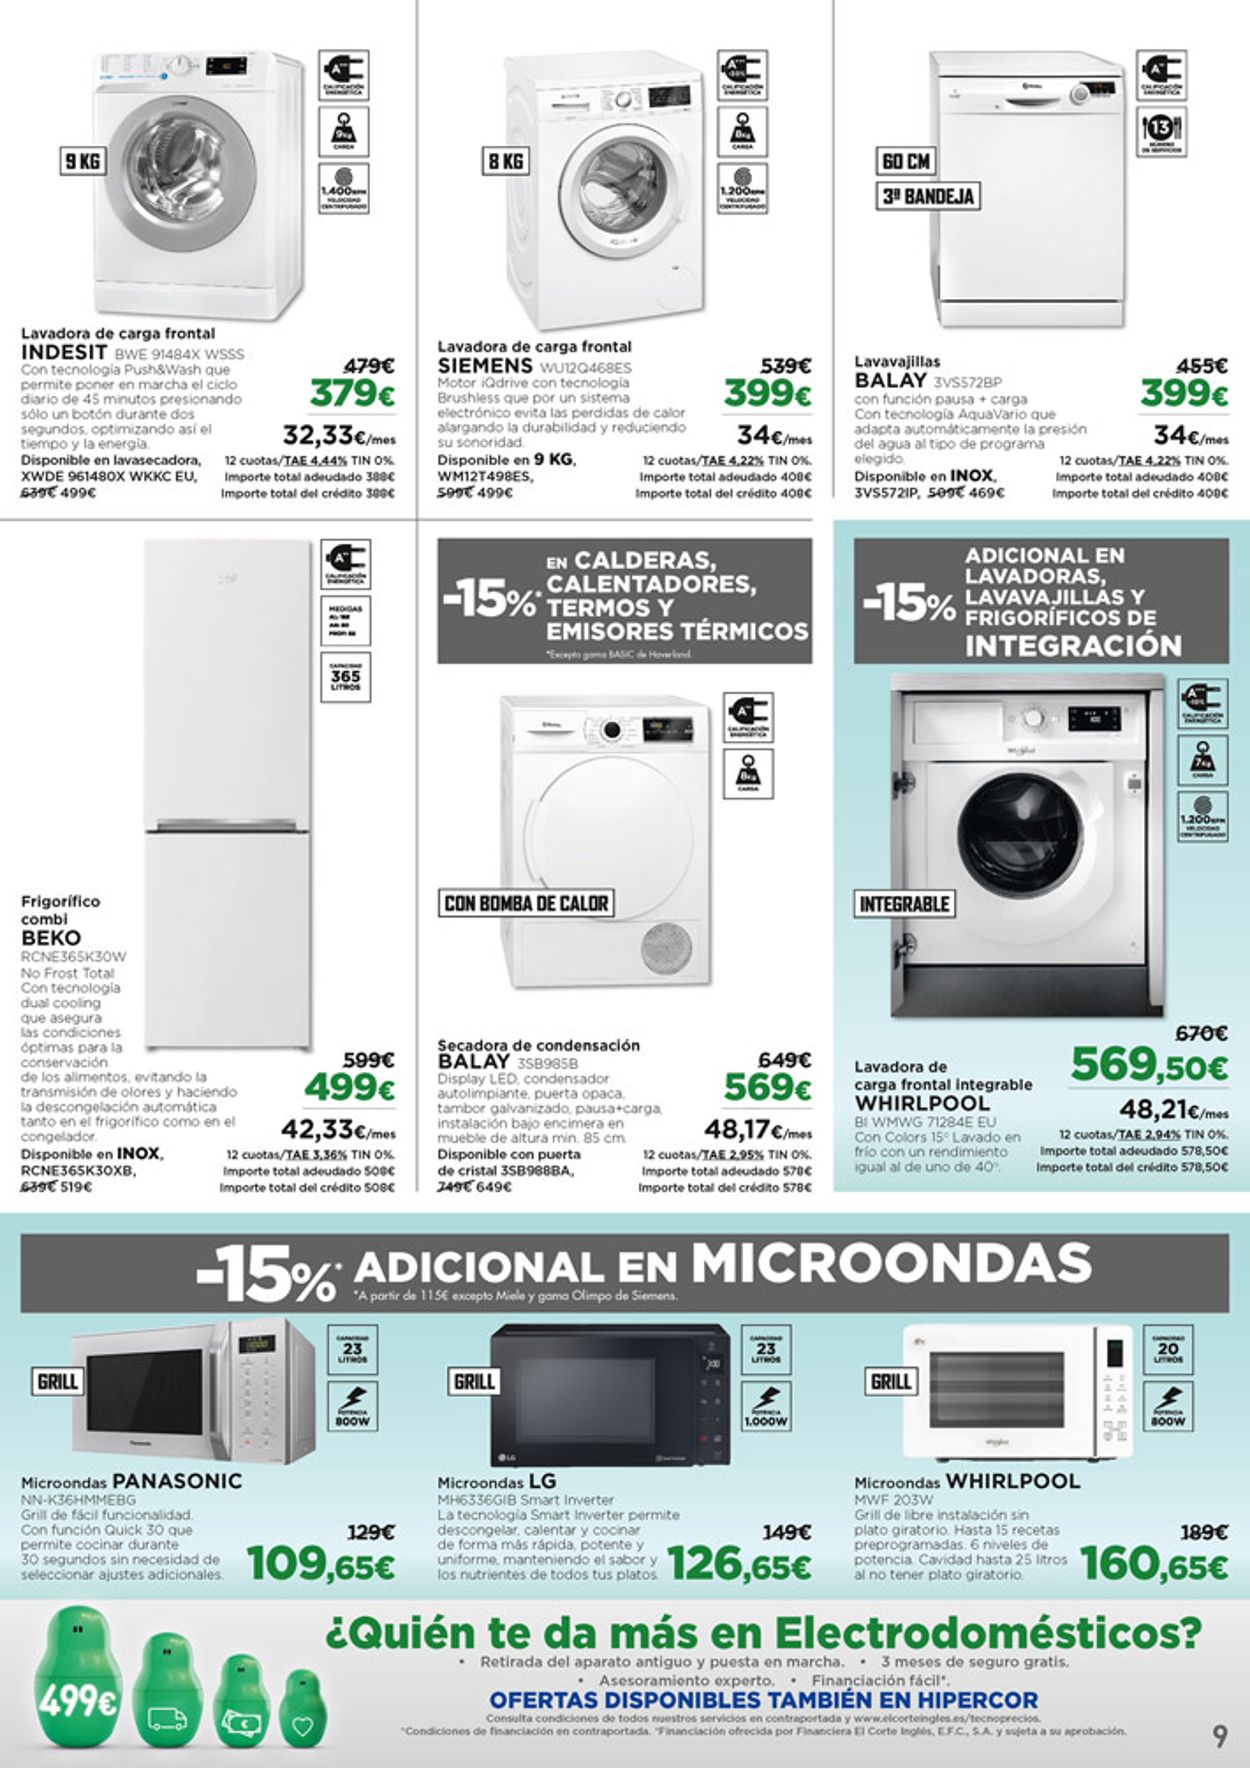 Microondas con grill · Panasonic · Electrodomésticos · El Corte Inglés (9)